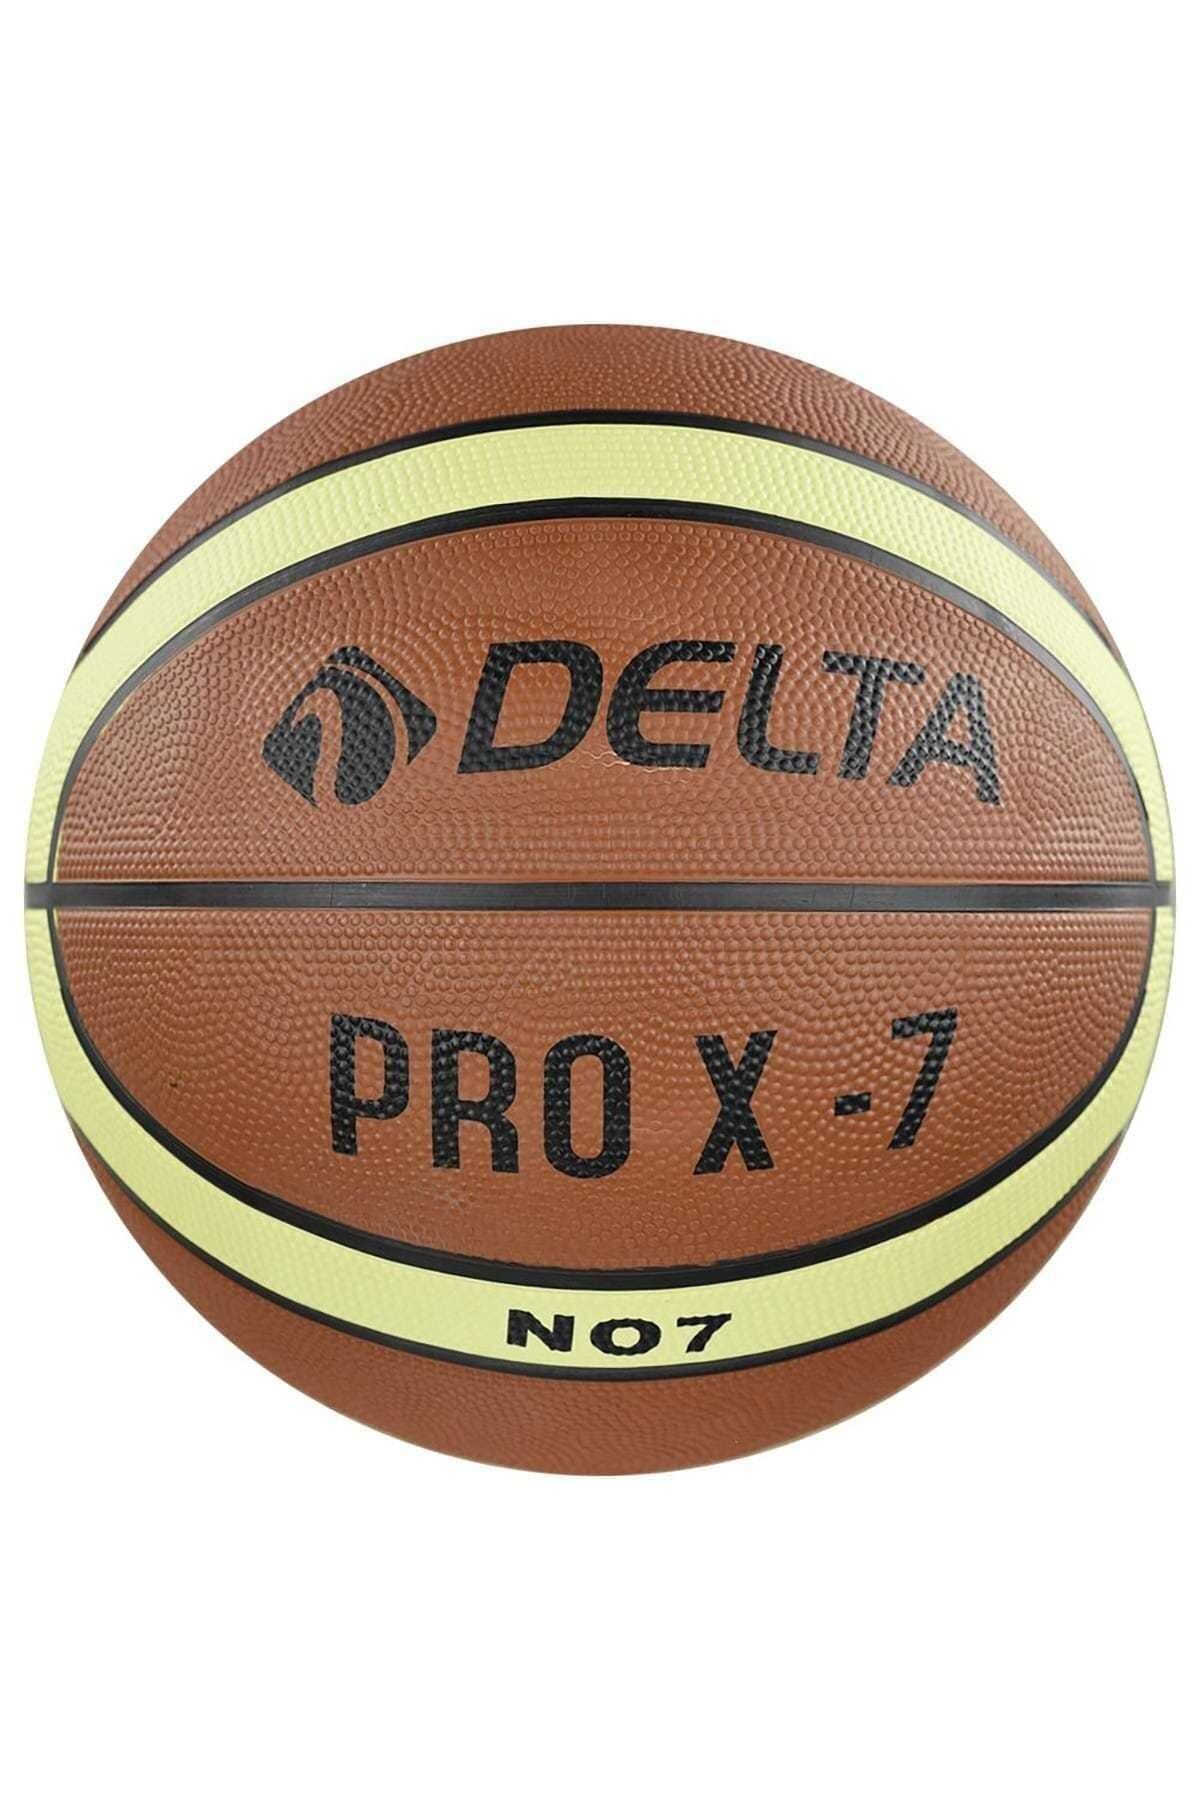 Delta Pro X Deluxe Kauçuk 7 Numara Basketbol Topu